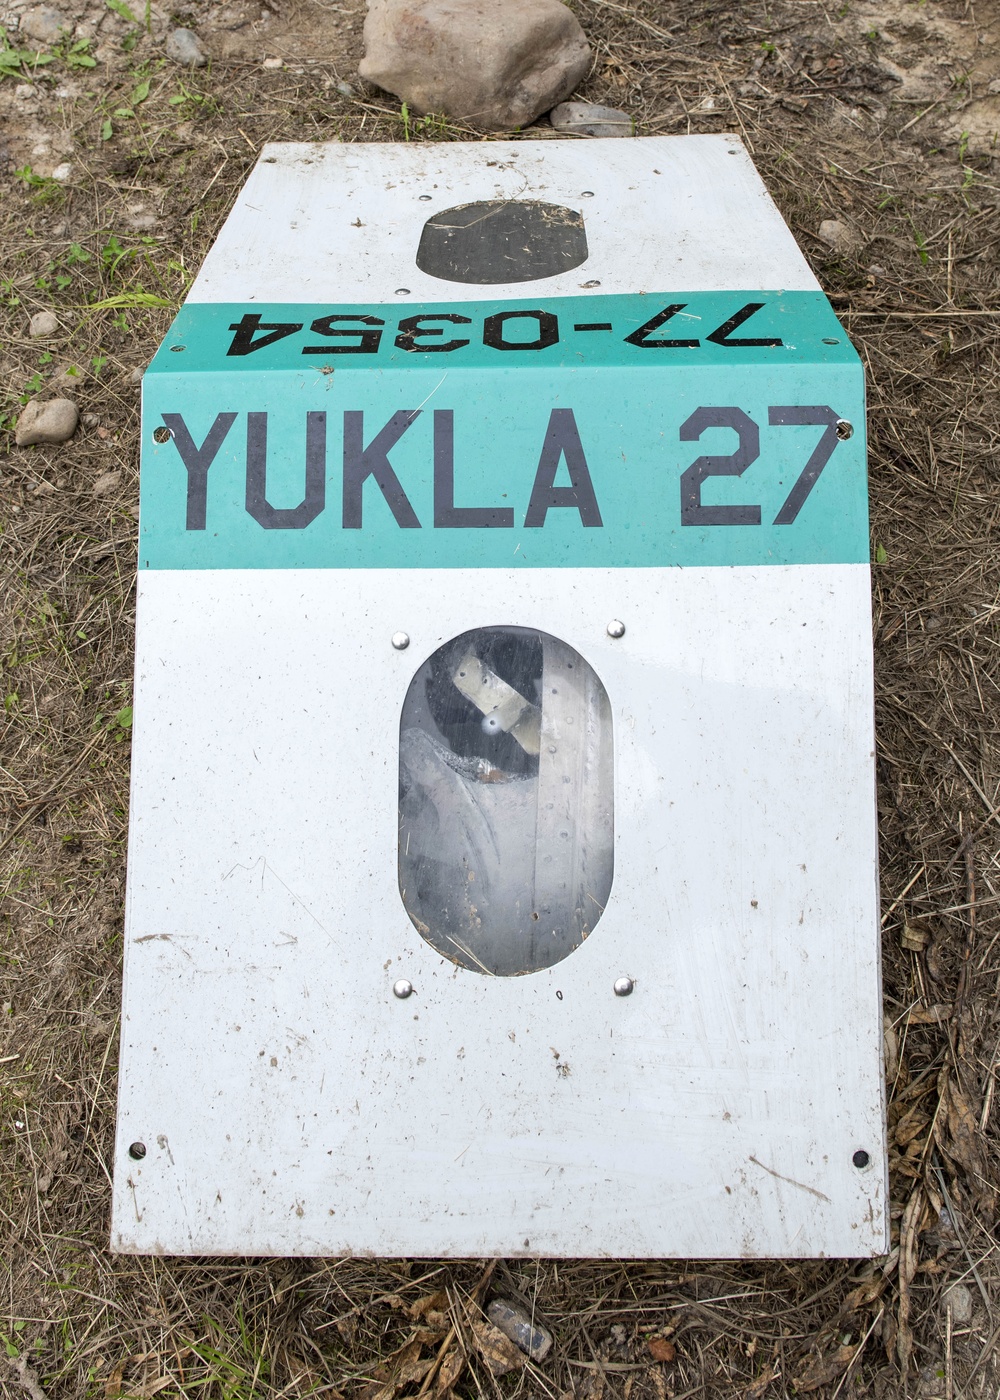 Boy Scout builds pavilion over Yukla 27 crash site